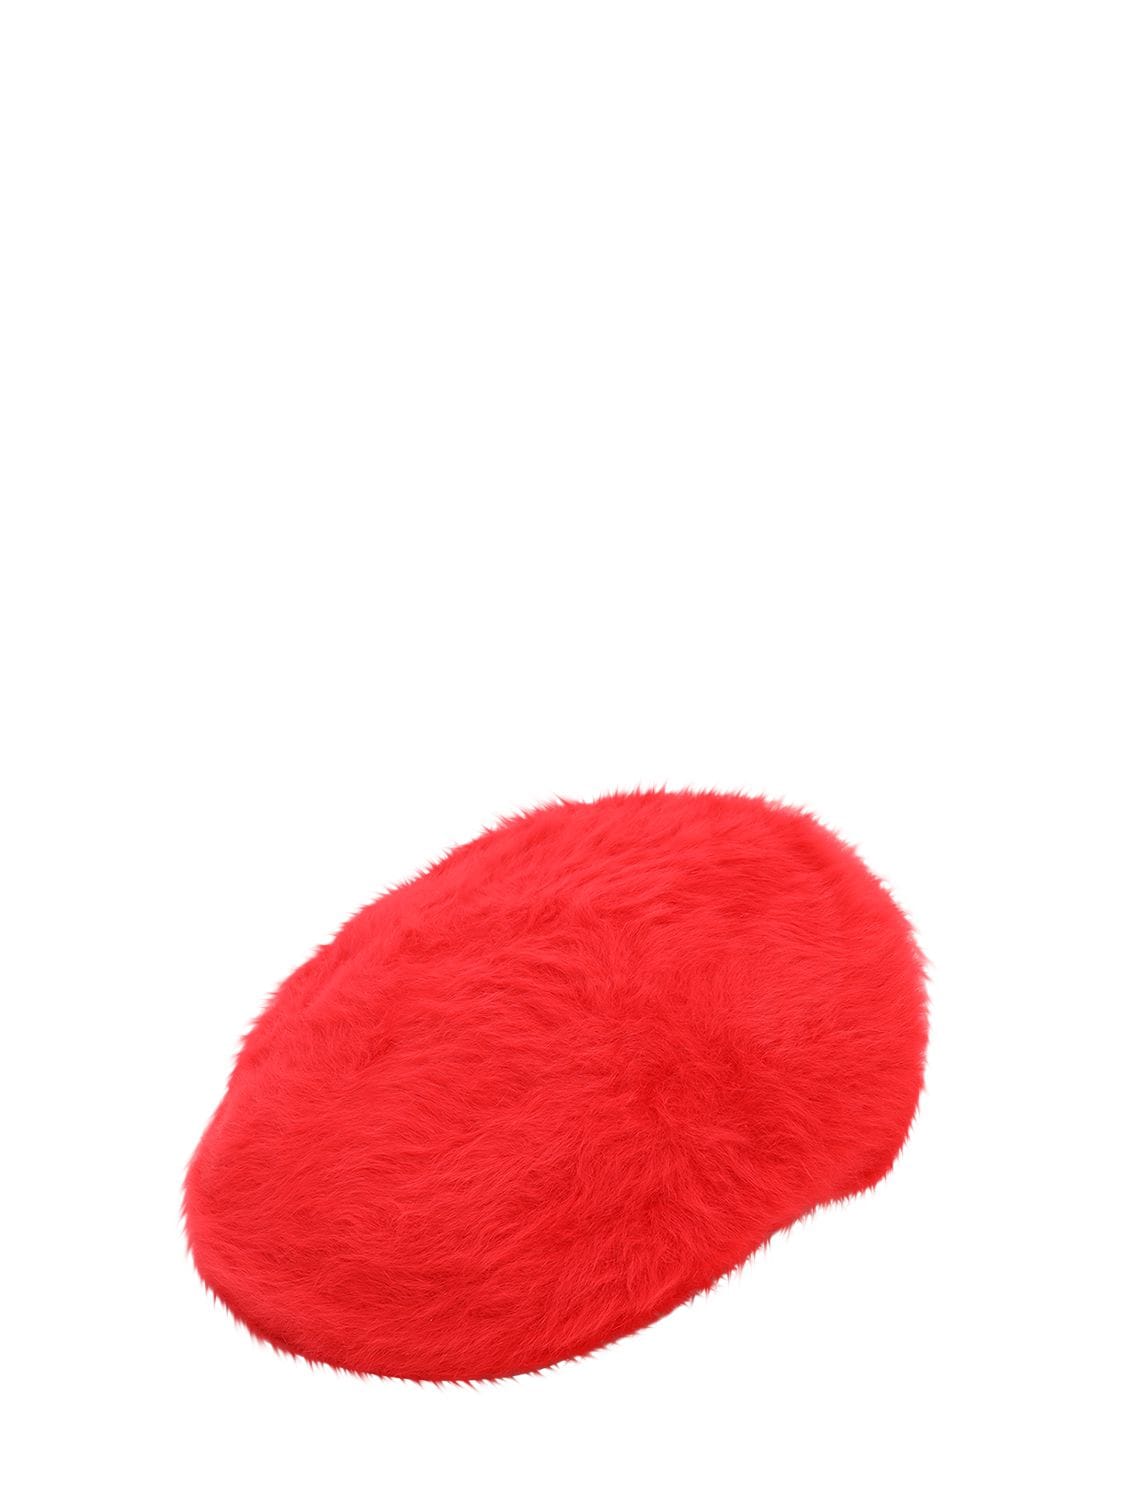 Kangol Furgora 504 Angora Blend Hat In Red